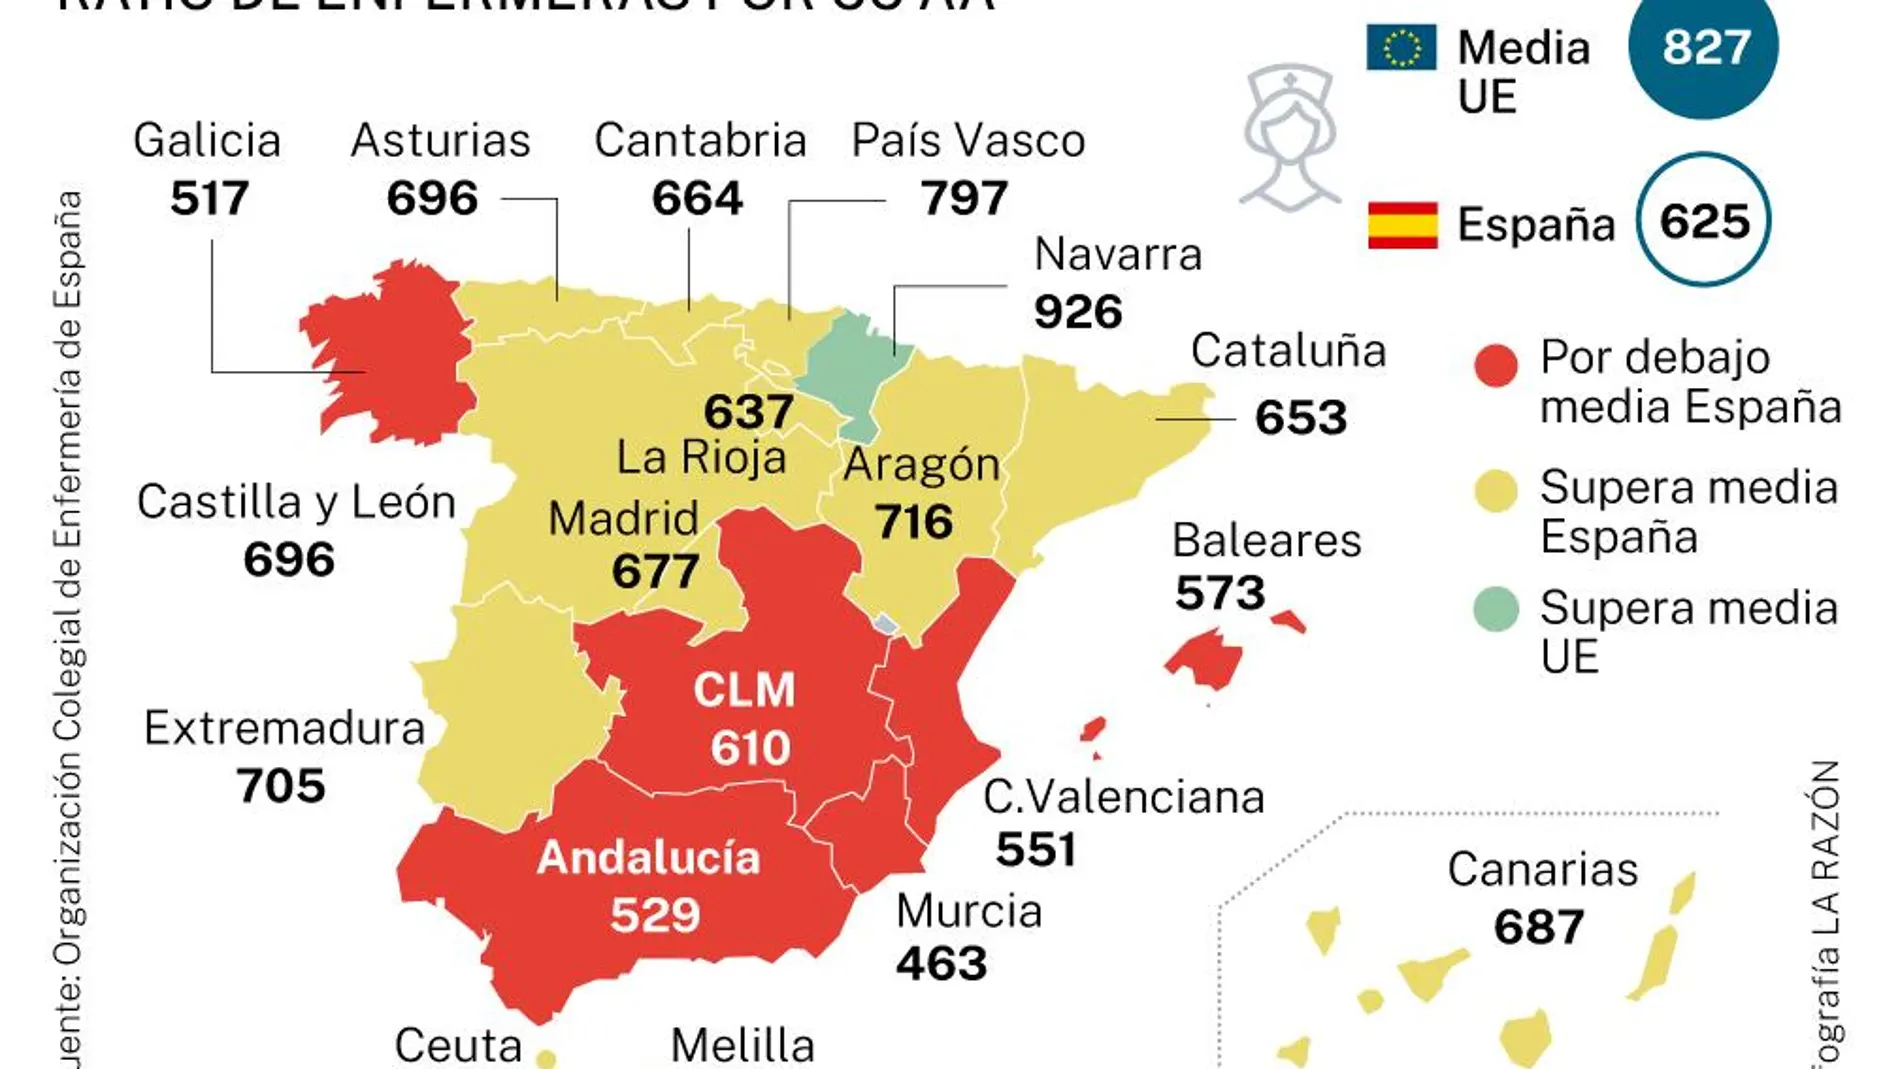 El informe del Consejo General de Enfermería muestra la desigualdad del número de profesionales en las distintas regiones de España